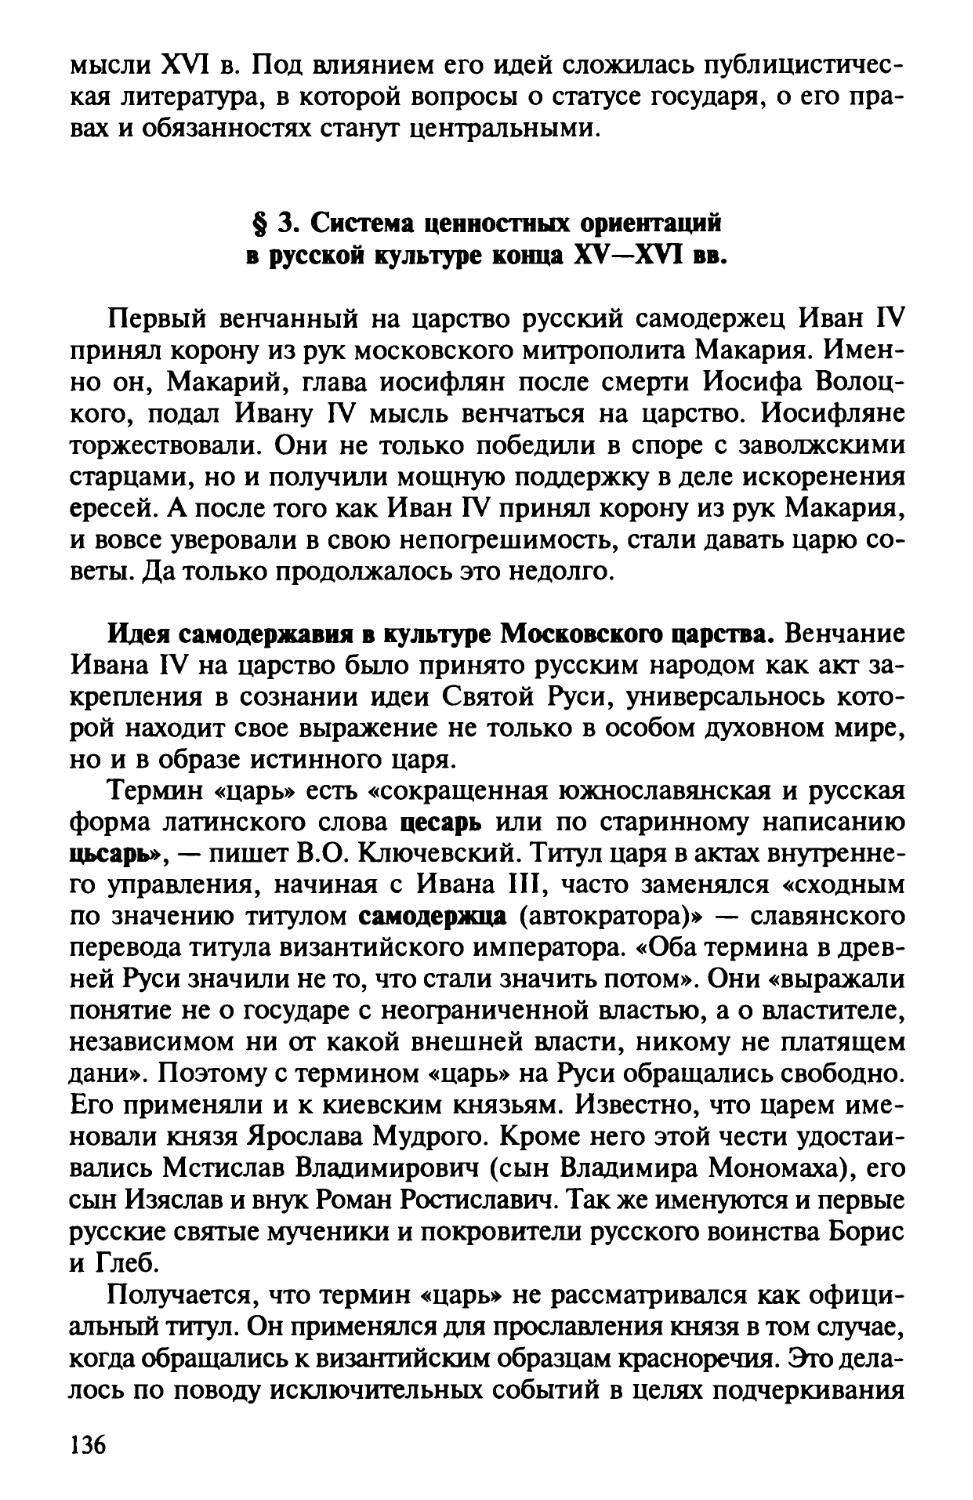 § 3. Система ценностных ориентации в русской культуре конца XV – XVI вв.